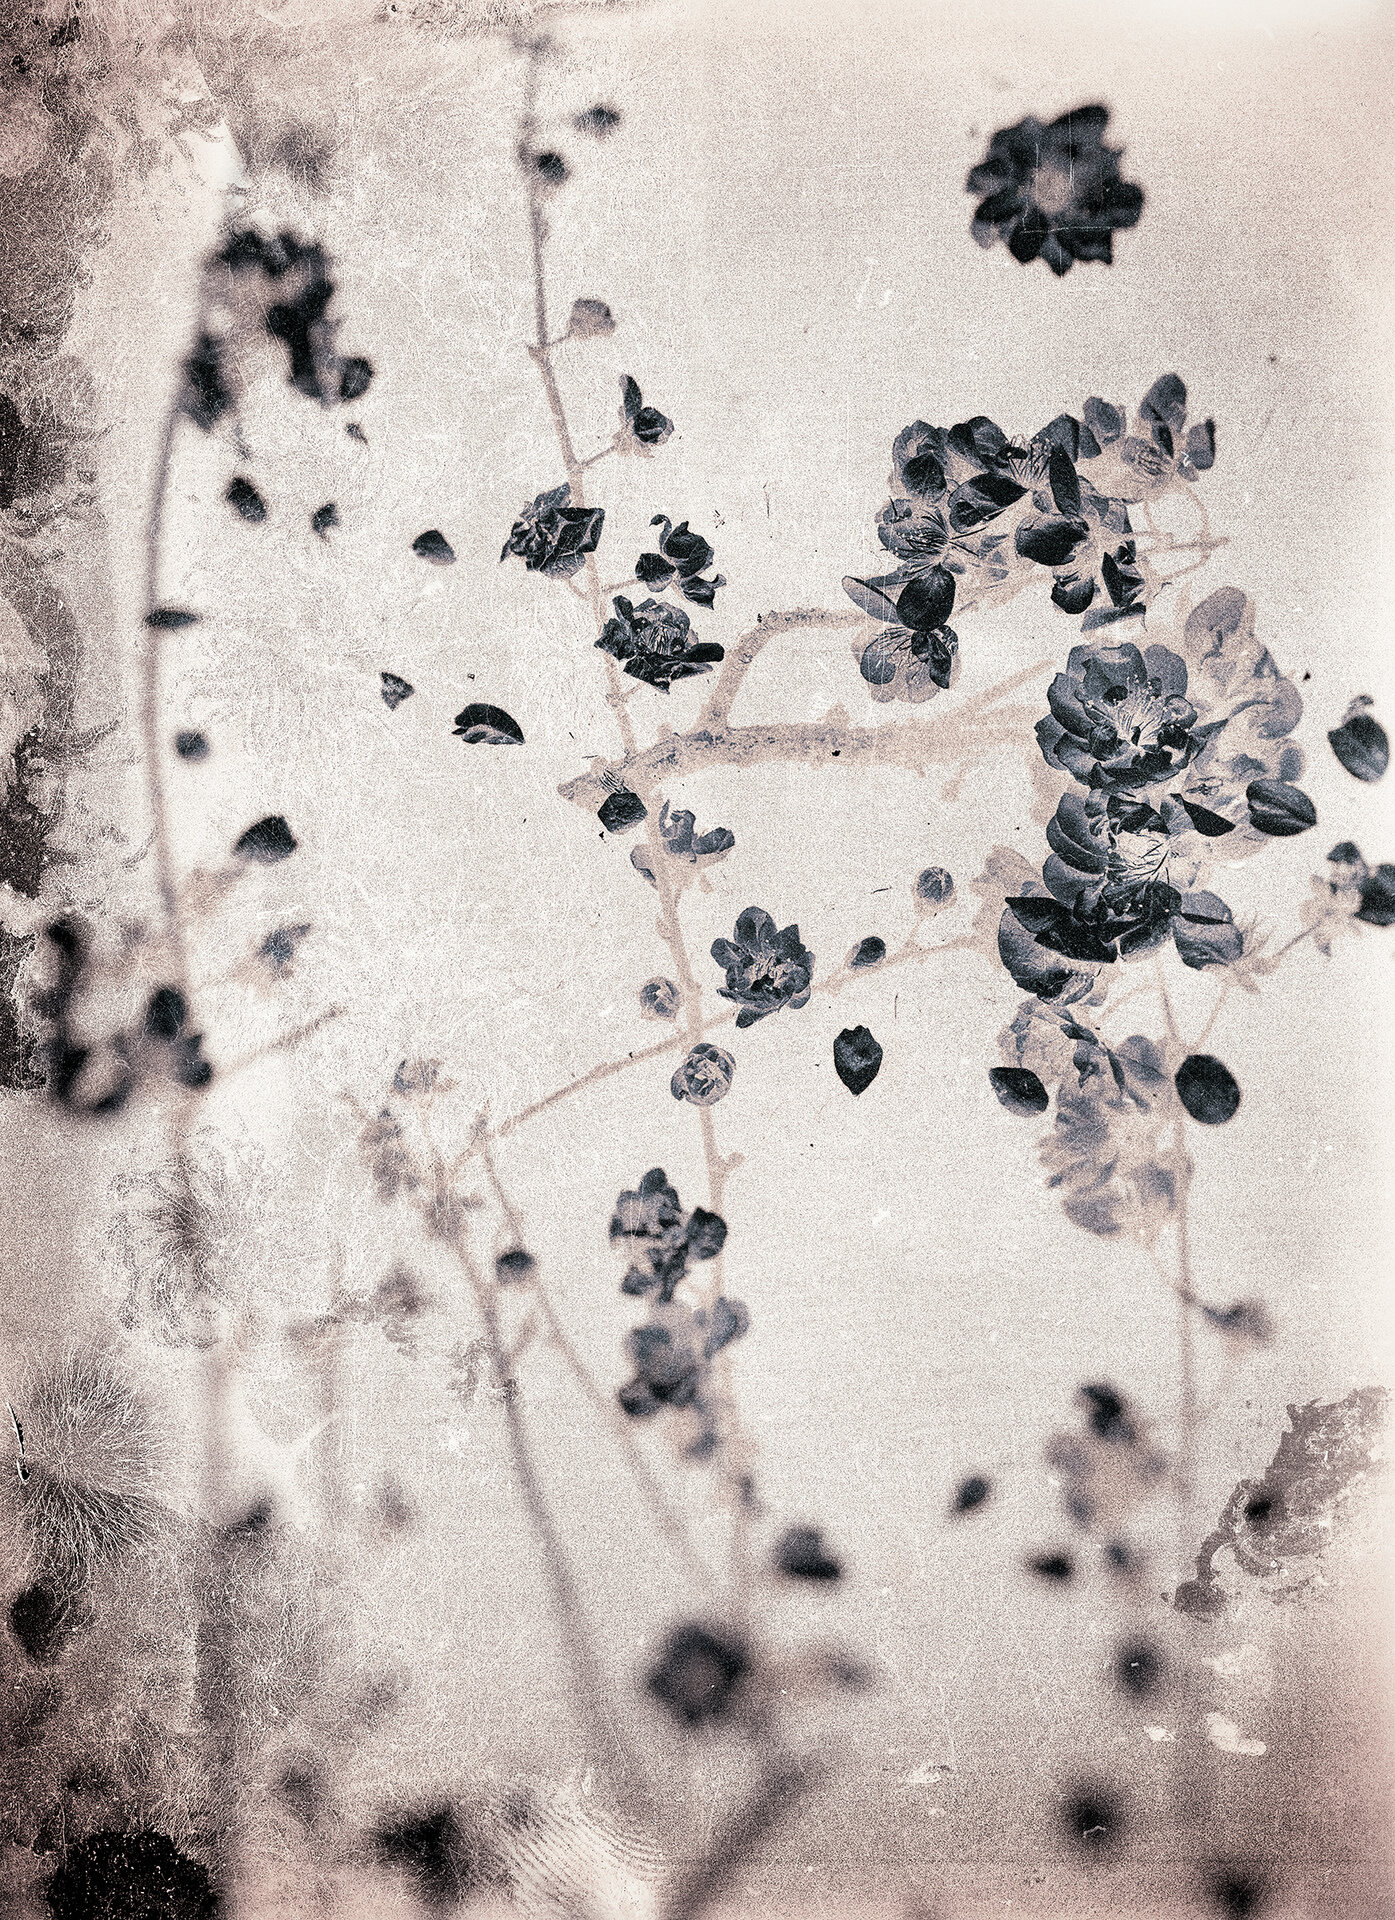   Plum Blossoms,  2019  Archival pigment print  20" x 14.5" 